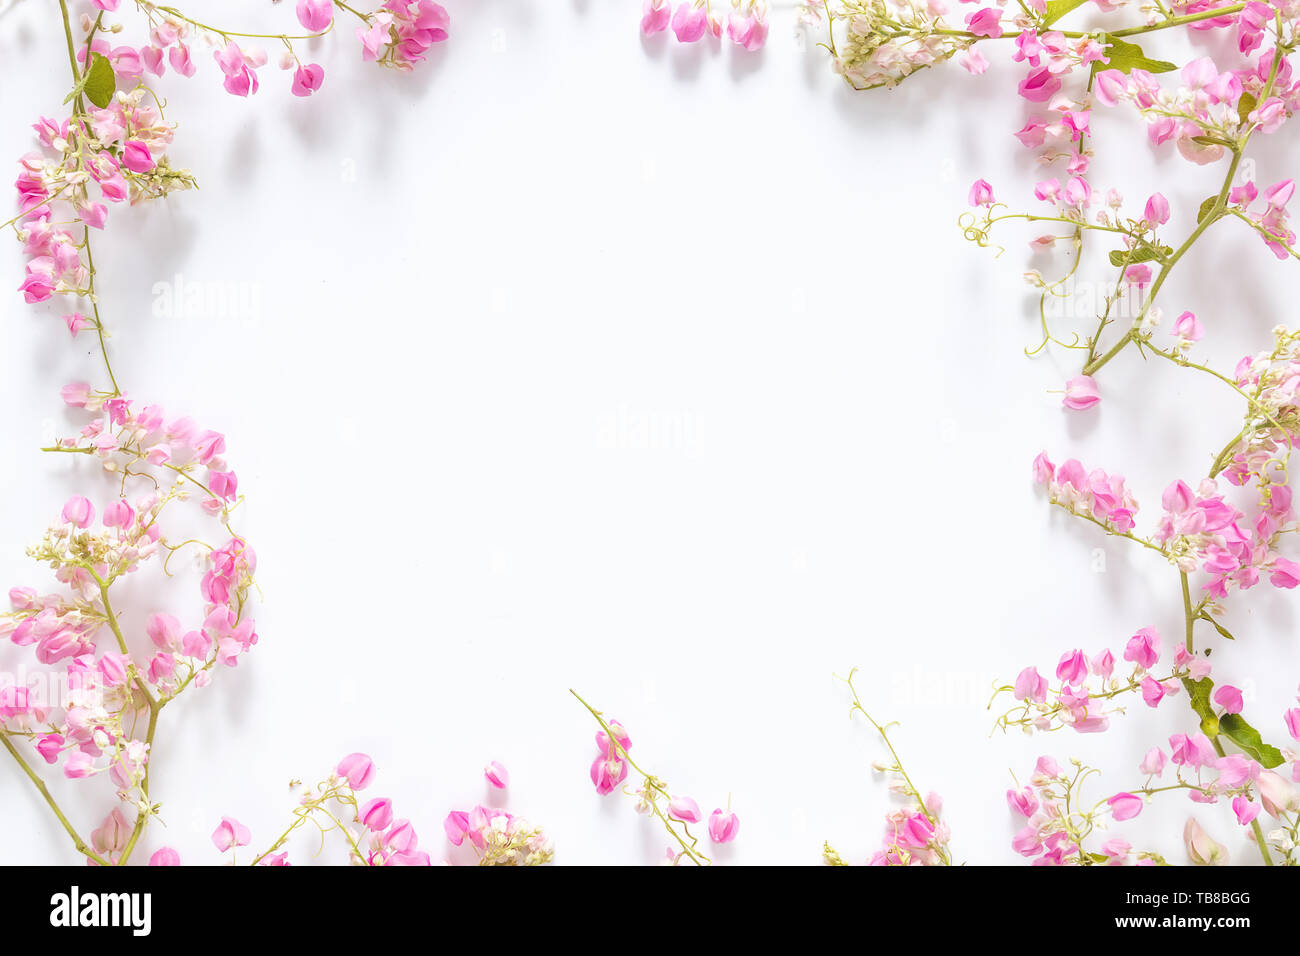 Borde cuadrado bastidor con flor rosa , ramas y hojas aislado sobre fondo blanco con espacio de copia. plano laico, vista superior Foto de stock